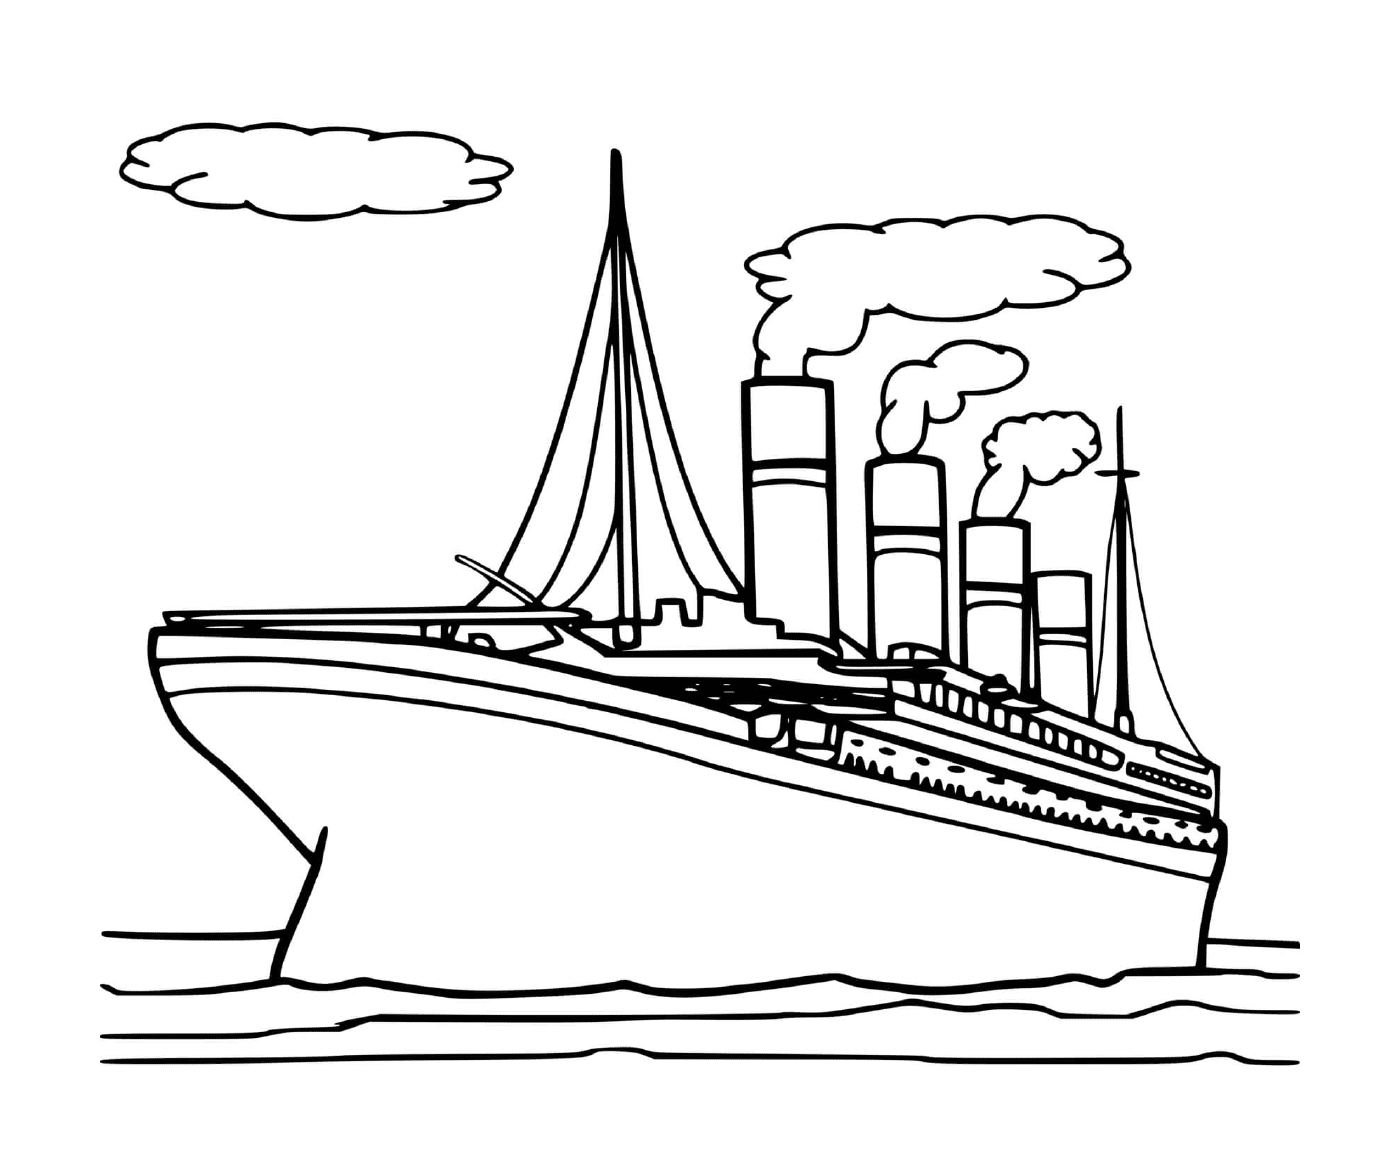  El barco Titanic 